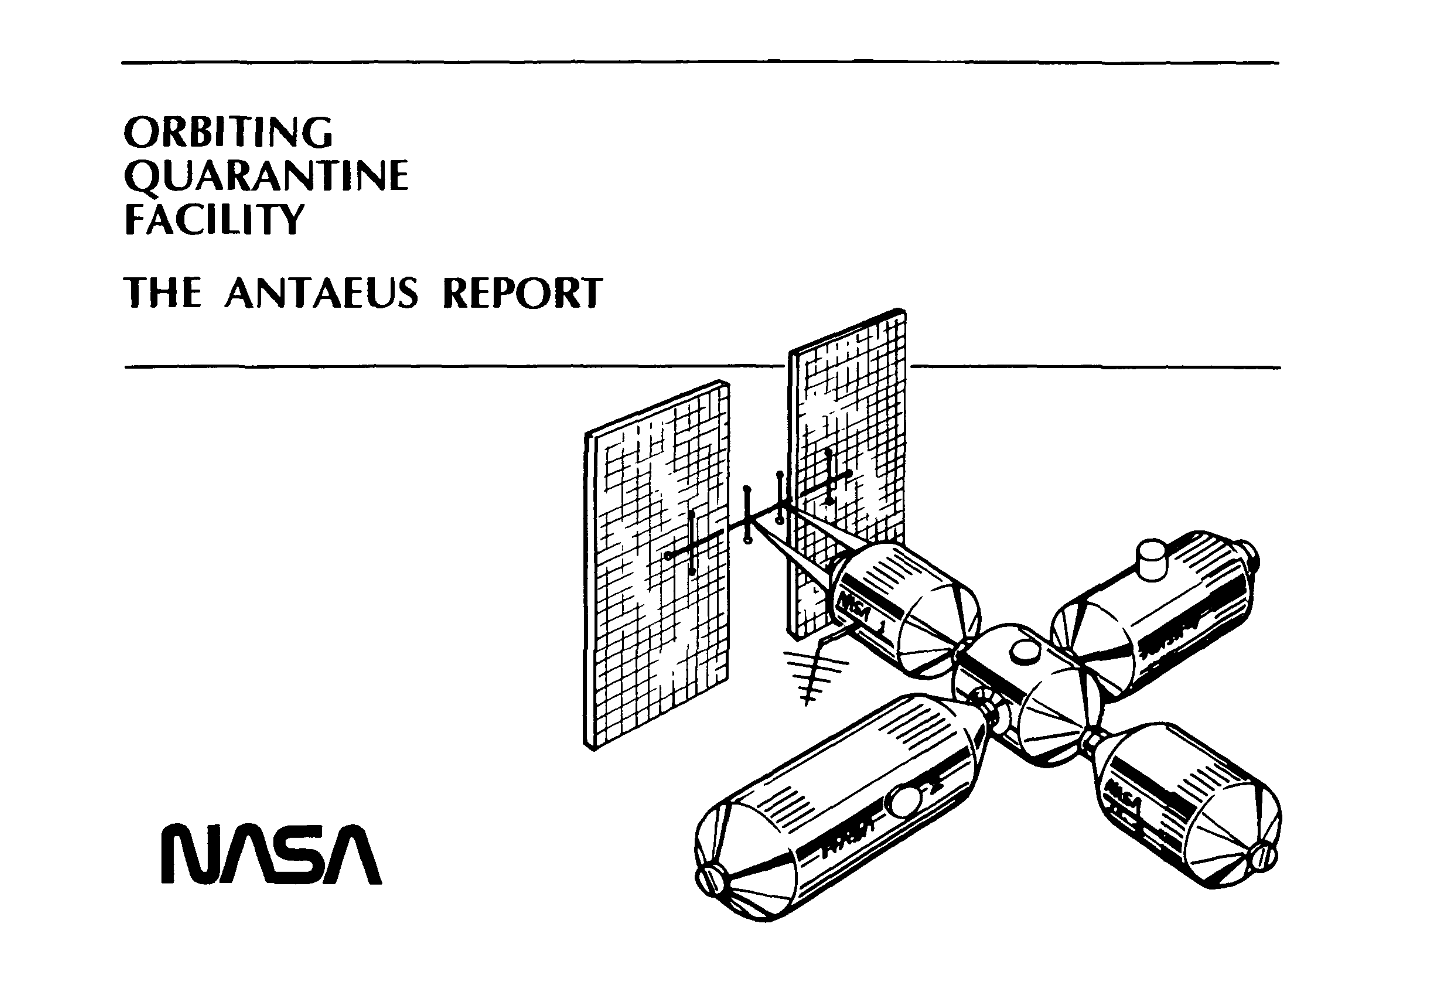 Orbiting Quarantine Facility. The Antaeus Report (NASA-SP-454 – 1981)